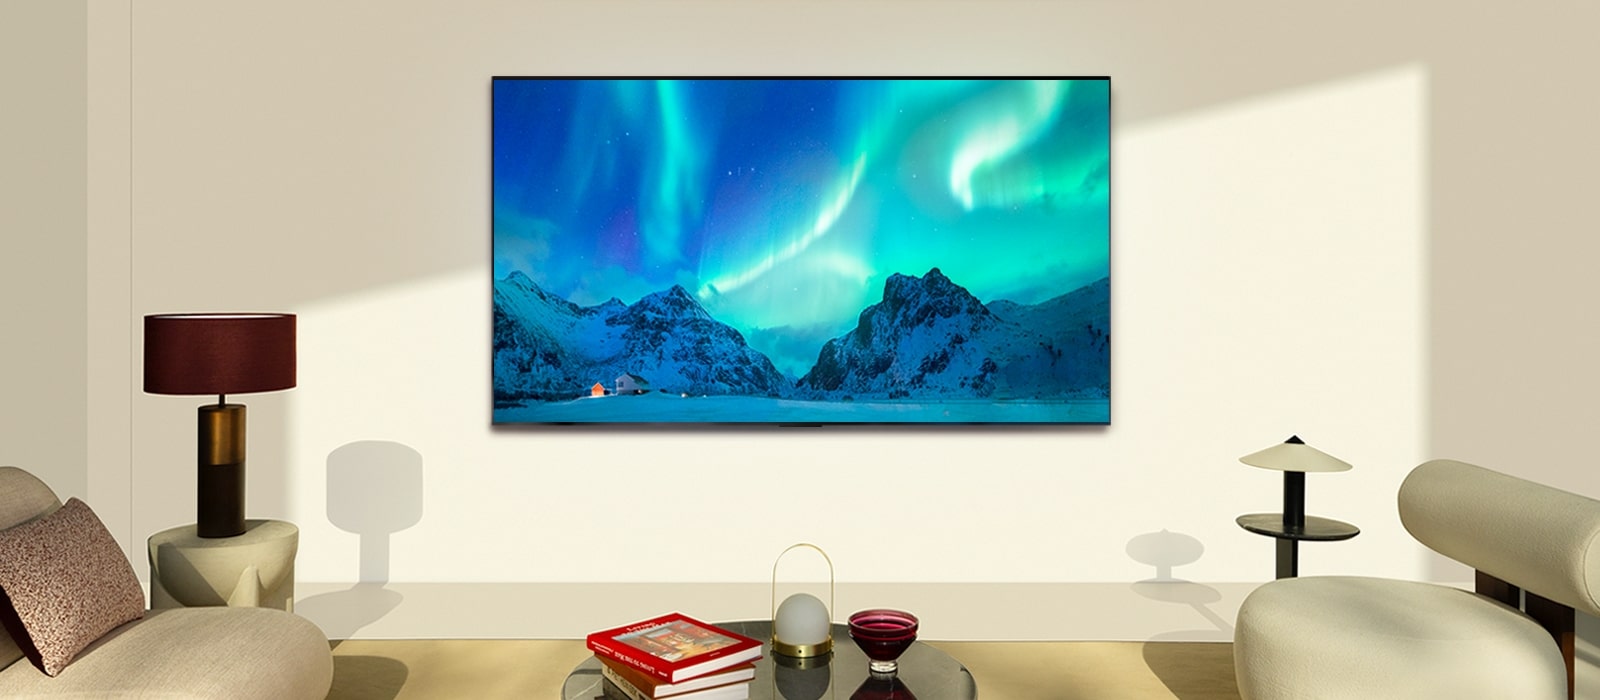 LG OLED TV i LG soundbar u savremenom životnom prostoru tokom dana. Na ekranu je prikazana slika polarne svetlosti na idealnom nivou osvetljenosti.